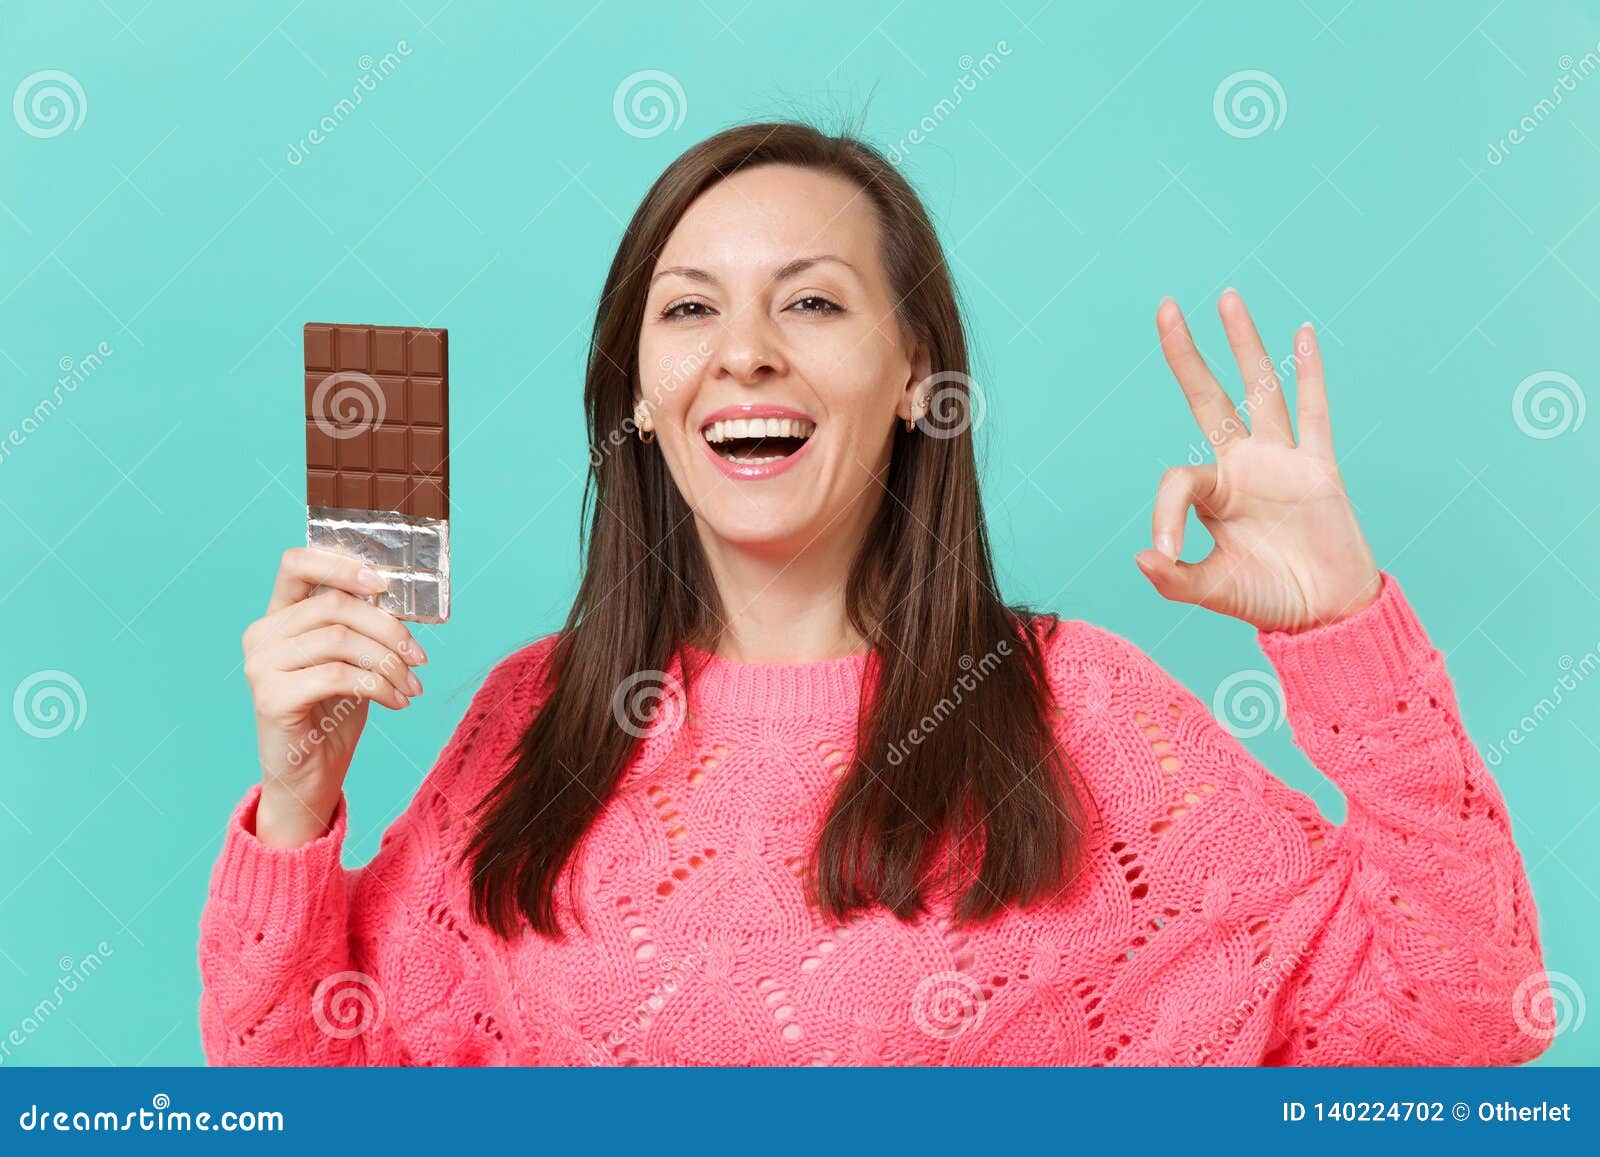 Дядя тянет руку в руке шоколадка. Девушка держит в руке батончик. Рука держит батончик. Девушка держит в руках шоколадку. Розовая шоколадка в руках.